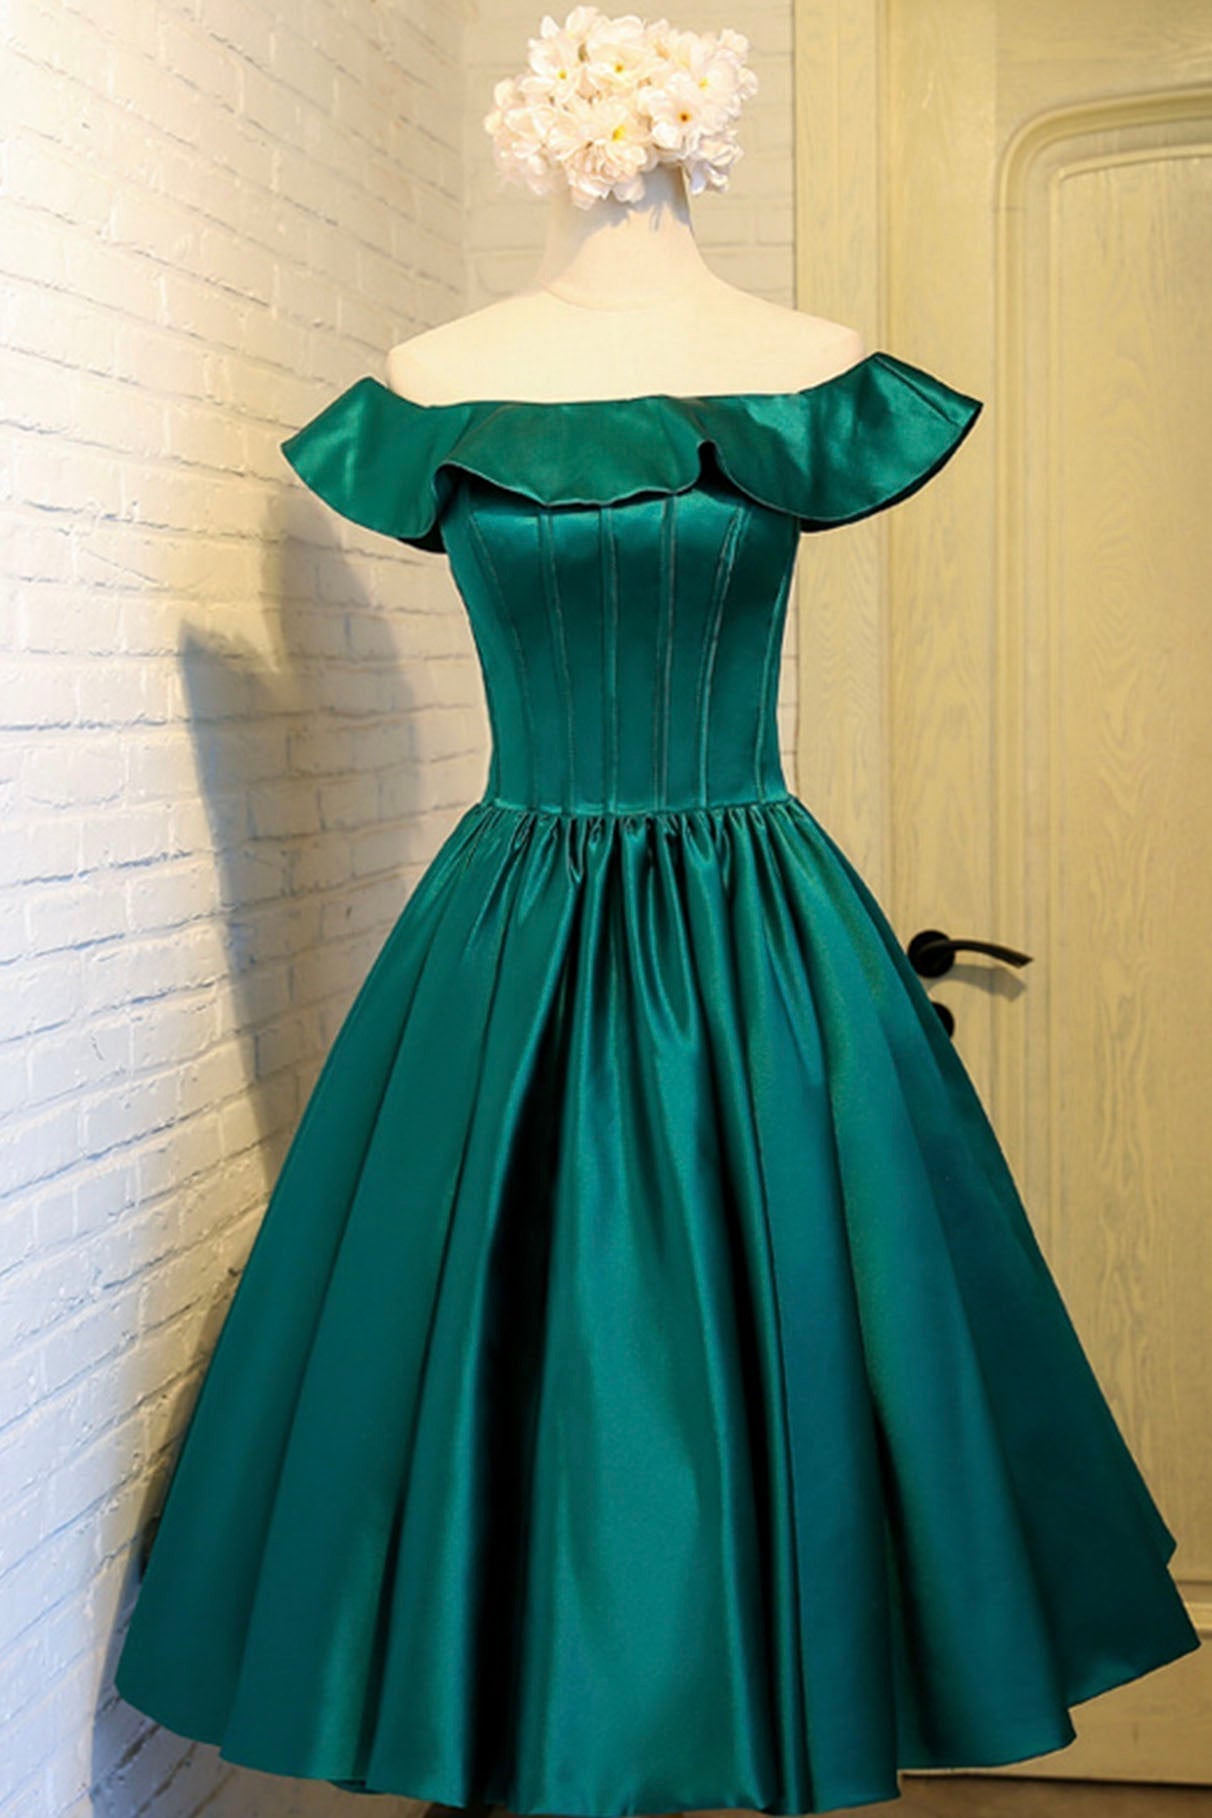 Braids, Cute Satin Short Prom Dress, Green A-Line Homecoming Dress